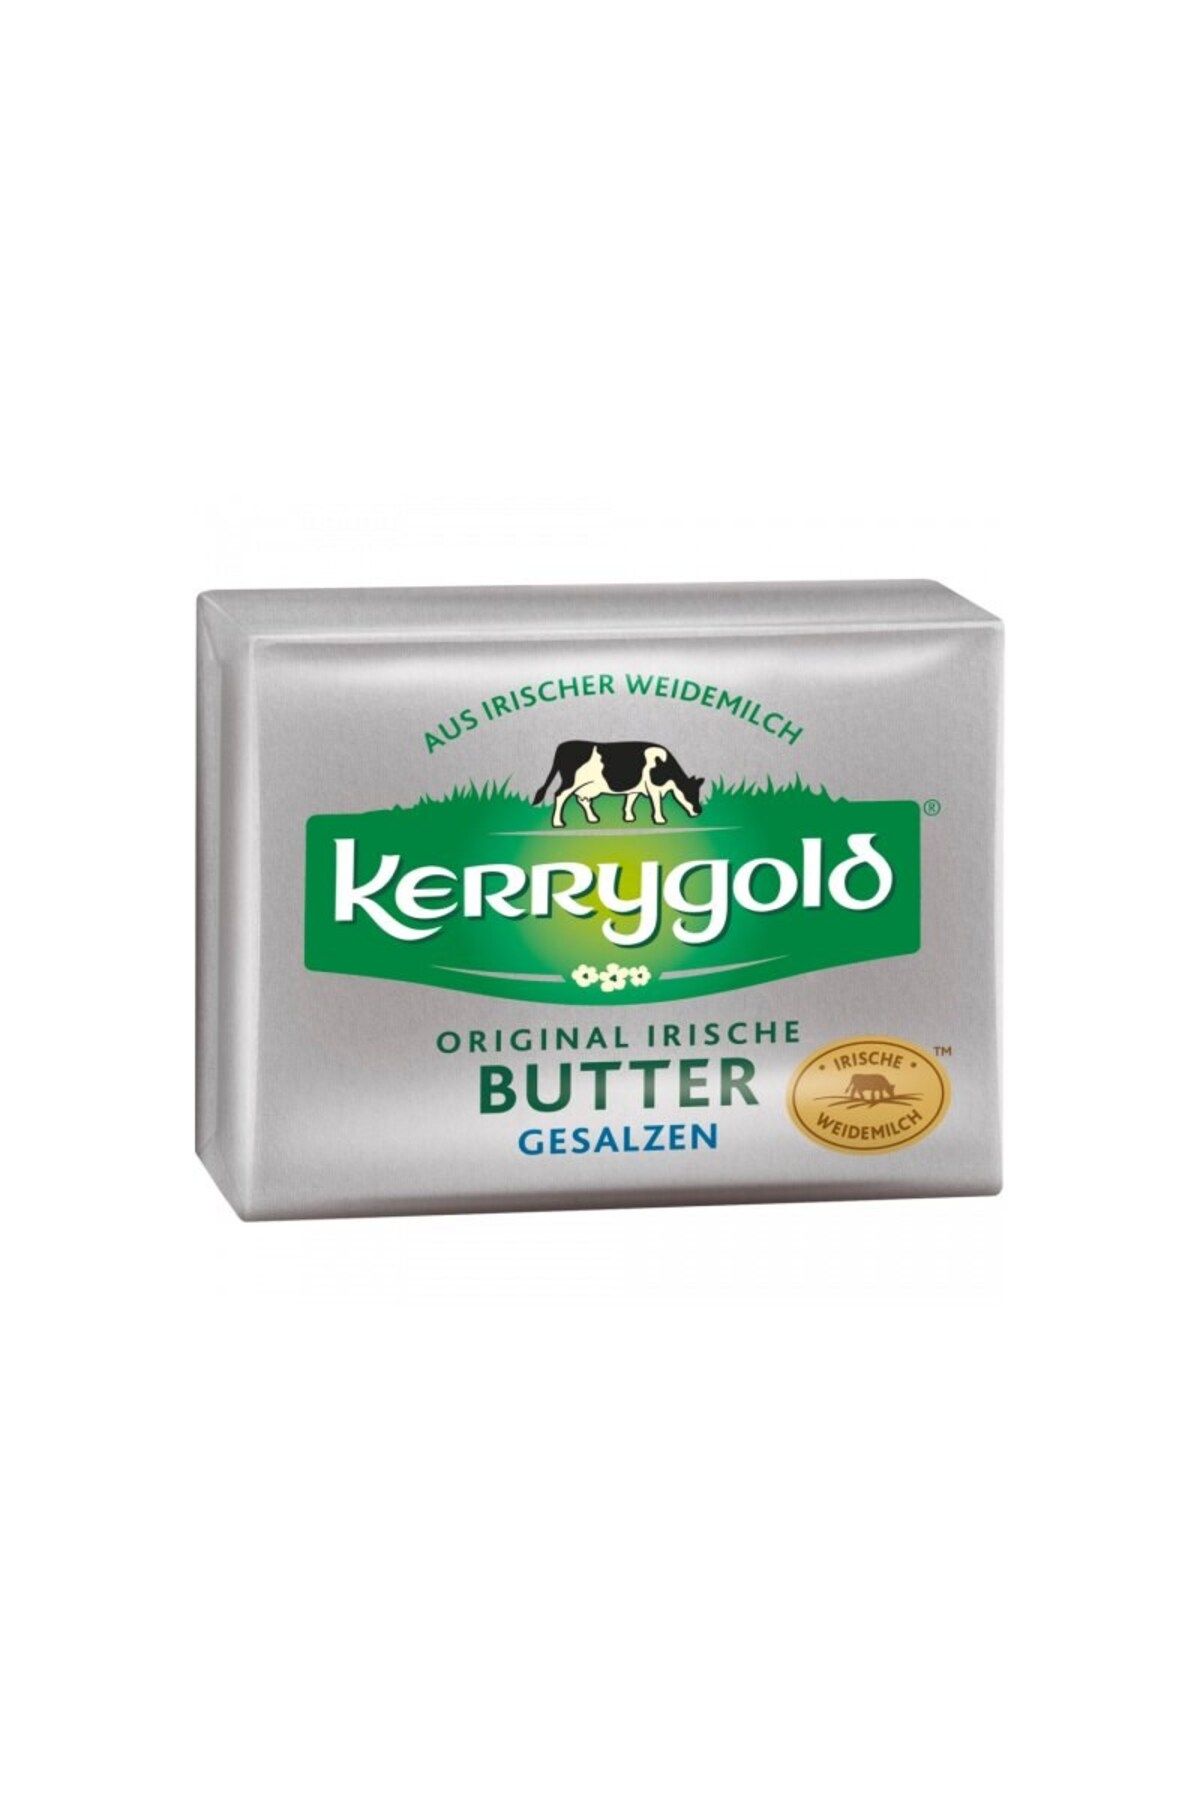 Kerry Gold Kerrygold Original Irische Butter Gesalzen 250g